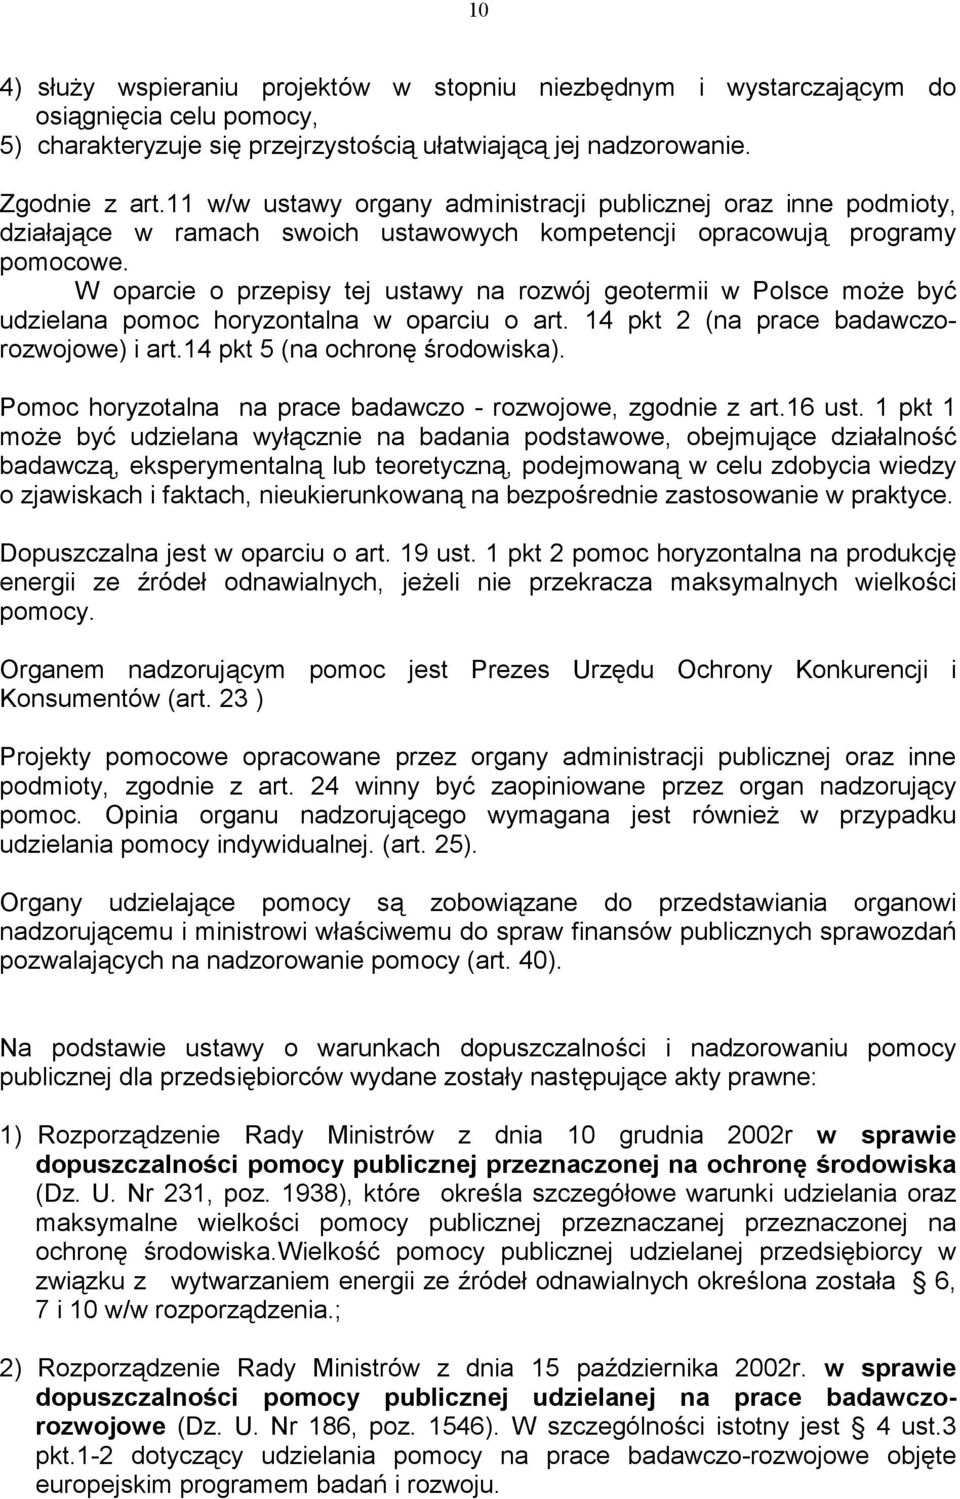 W oparcie o przepisy tej ustawy na rozwój geotermii w Polsce może być udzielana pomoc horyzontalna w oparciu o art. 14 pkt 2 (na prace badawczorozwojowe) i art.14 pkt 5 (na ochronę środowiska).